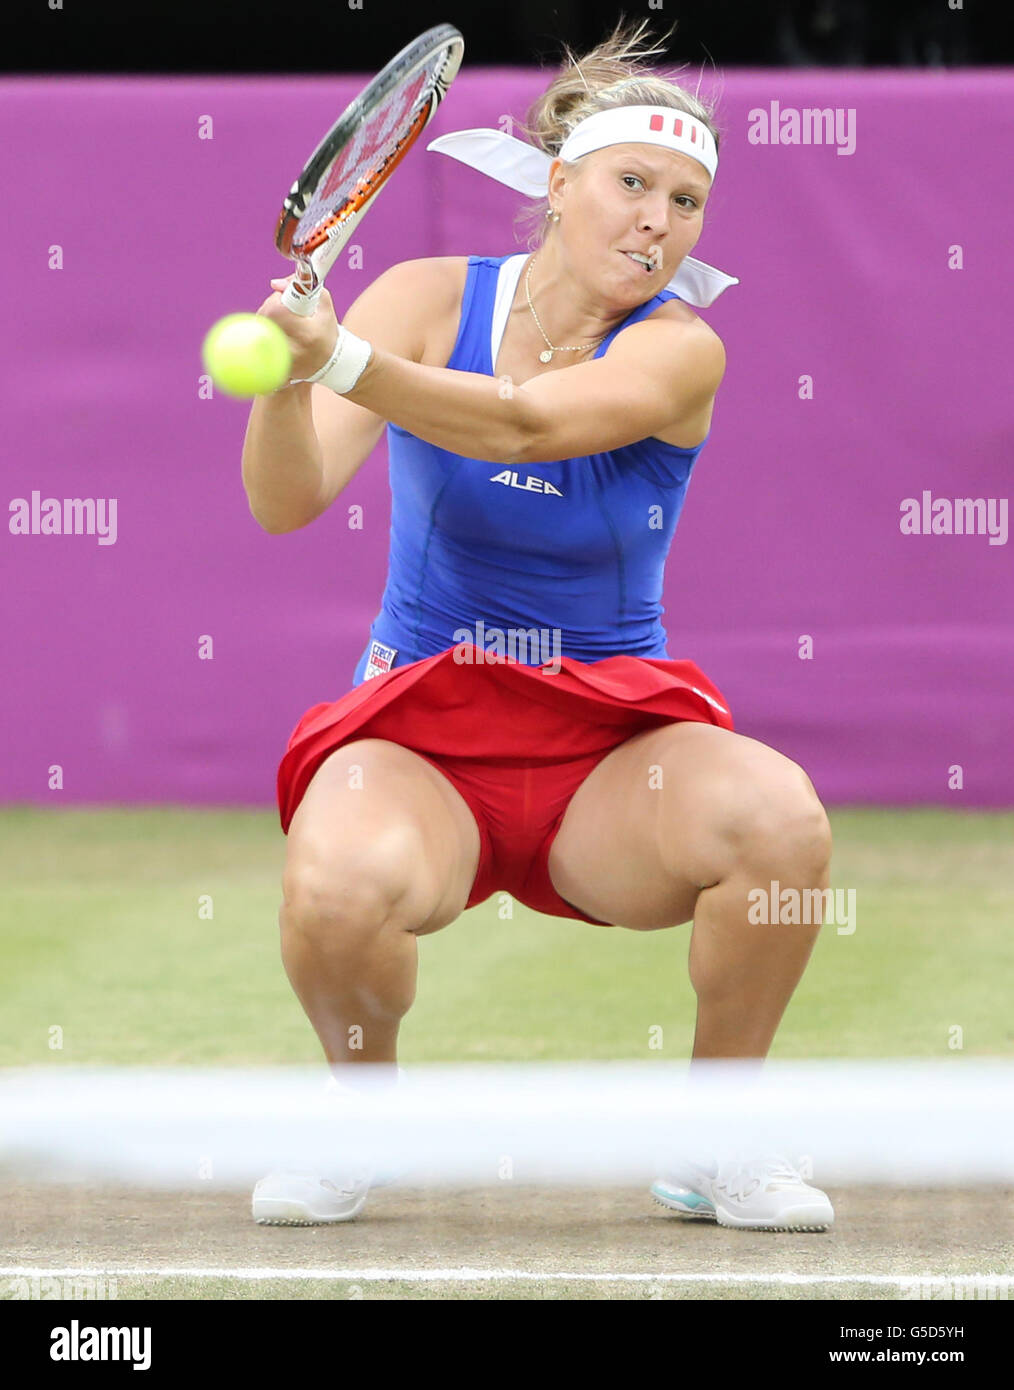 Damen-Tennis-Doppelspielerin Lucie Hradecka aus der Tschechischen Republik Im Finale gegen Serena und Venus Williams In Wimbledon bei den Olympischen Spielen 2012 in London Stockfoto